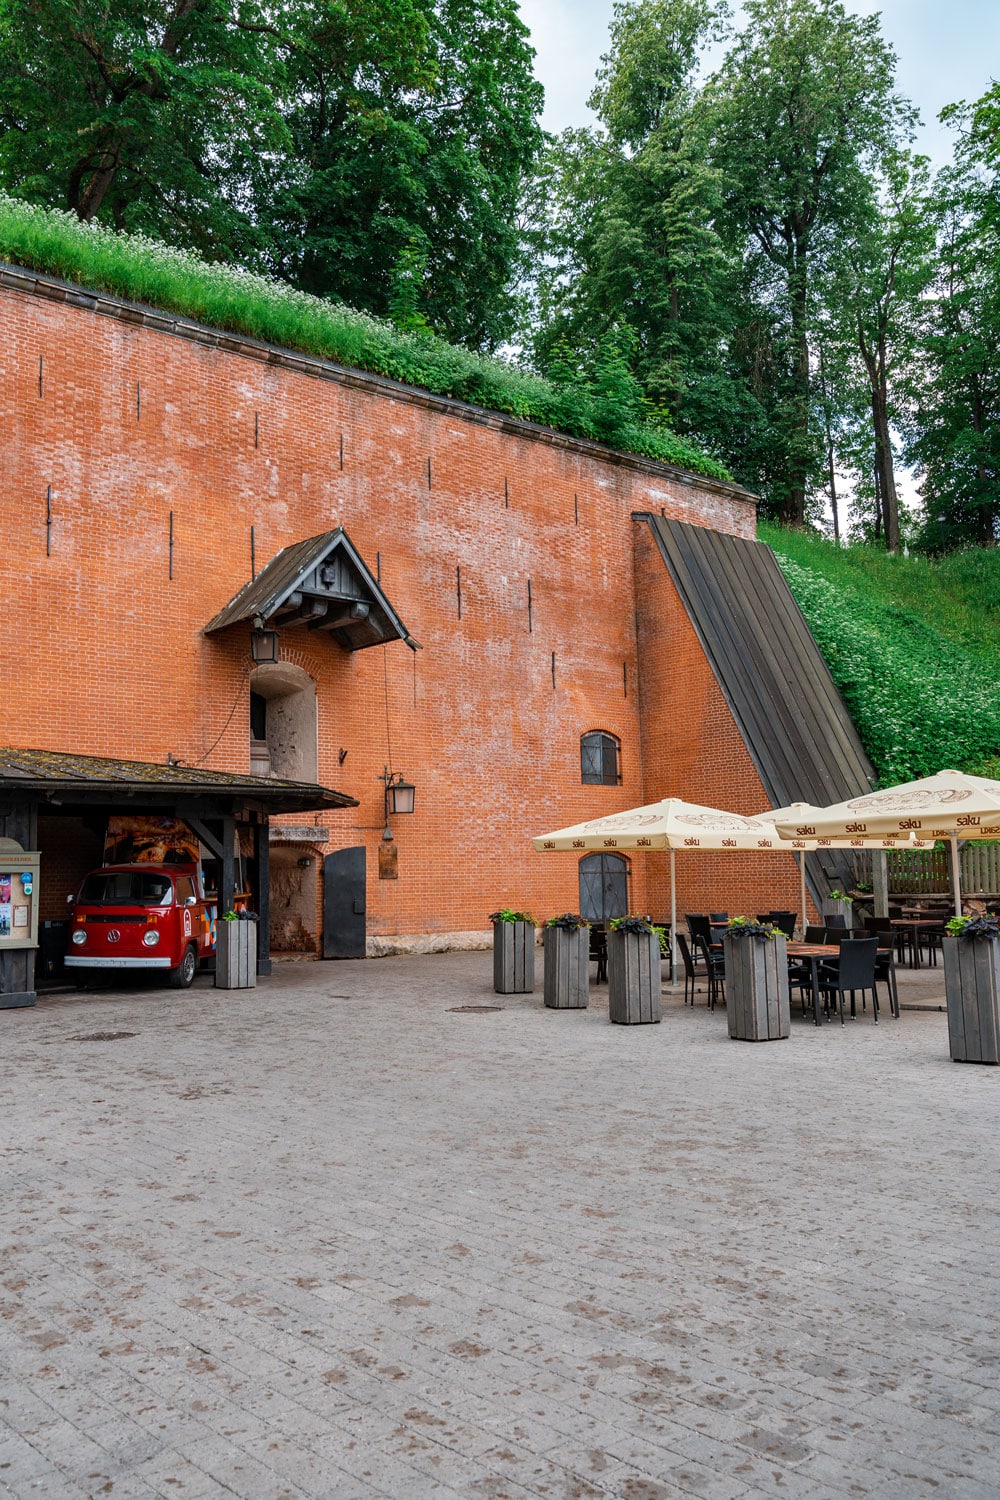 Gunpowder Cellar of Tartu